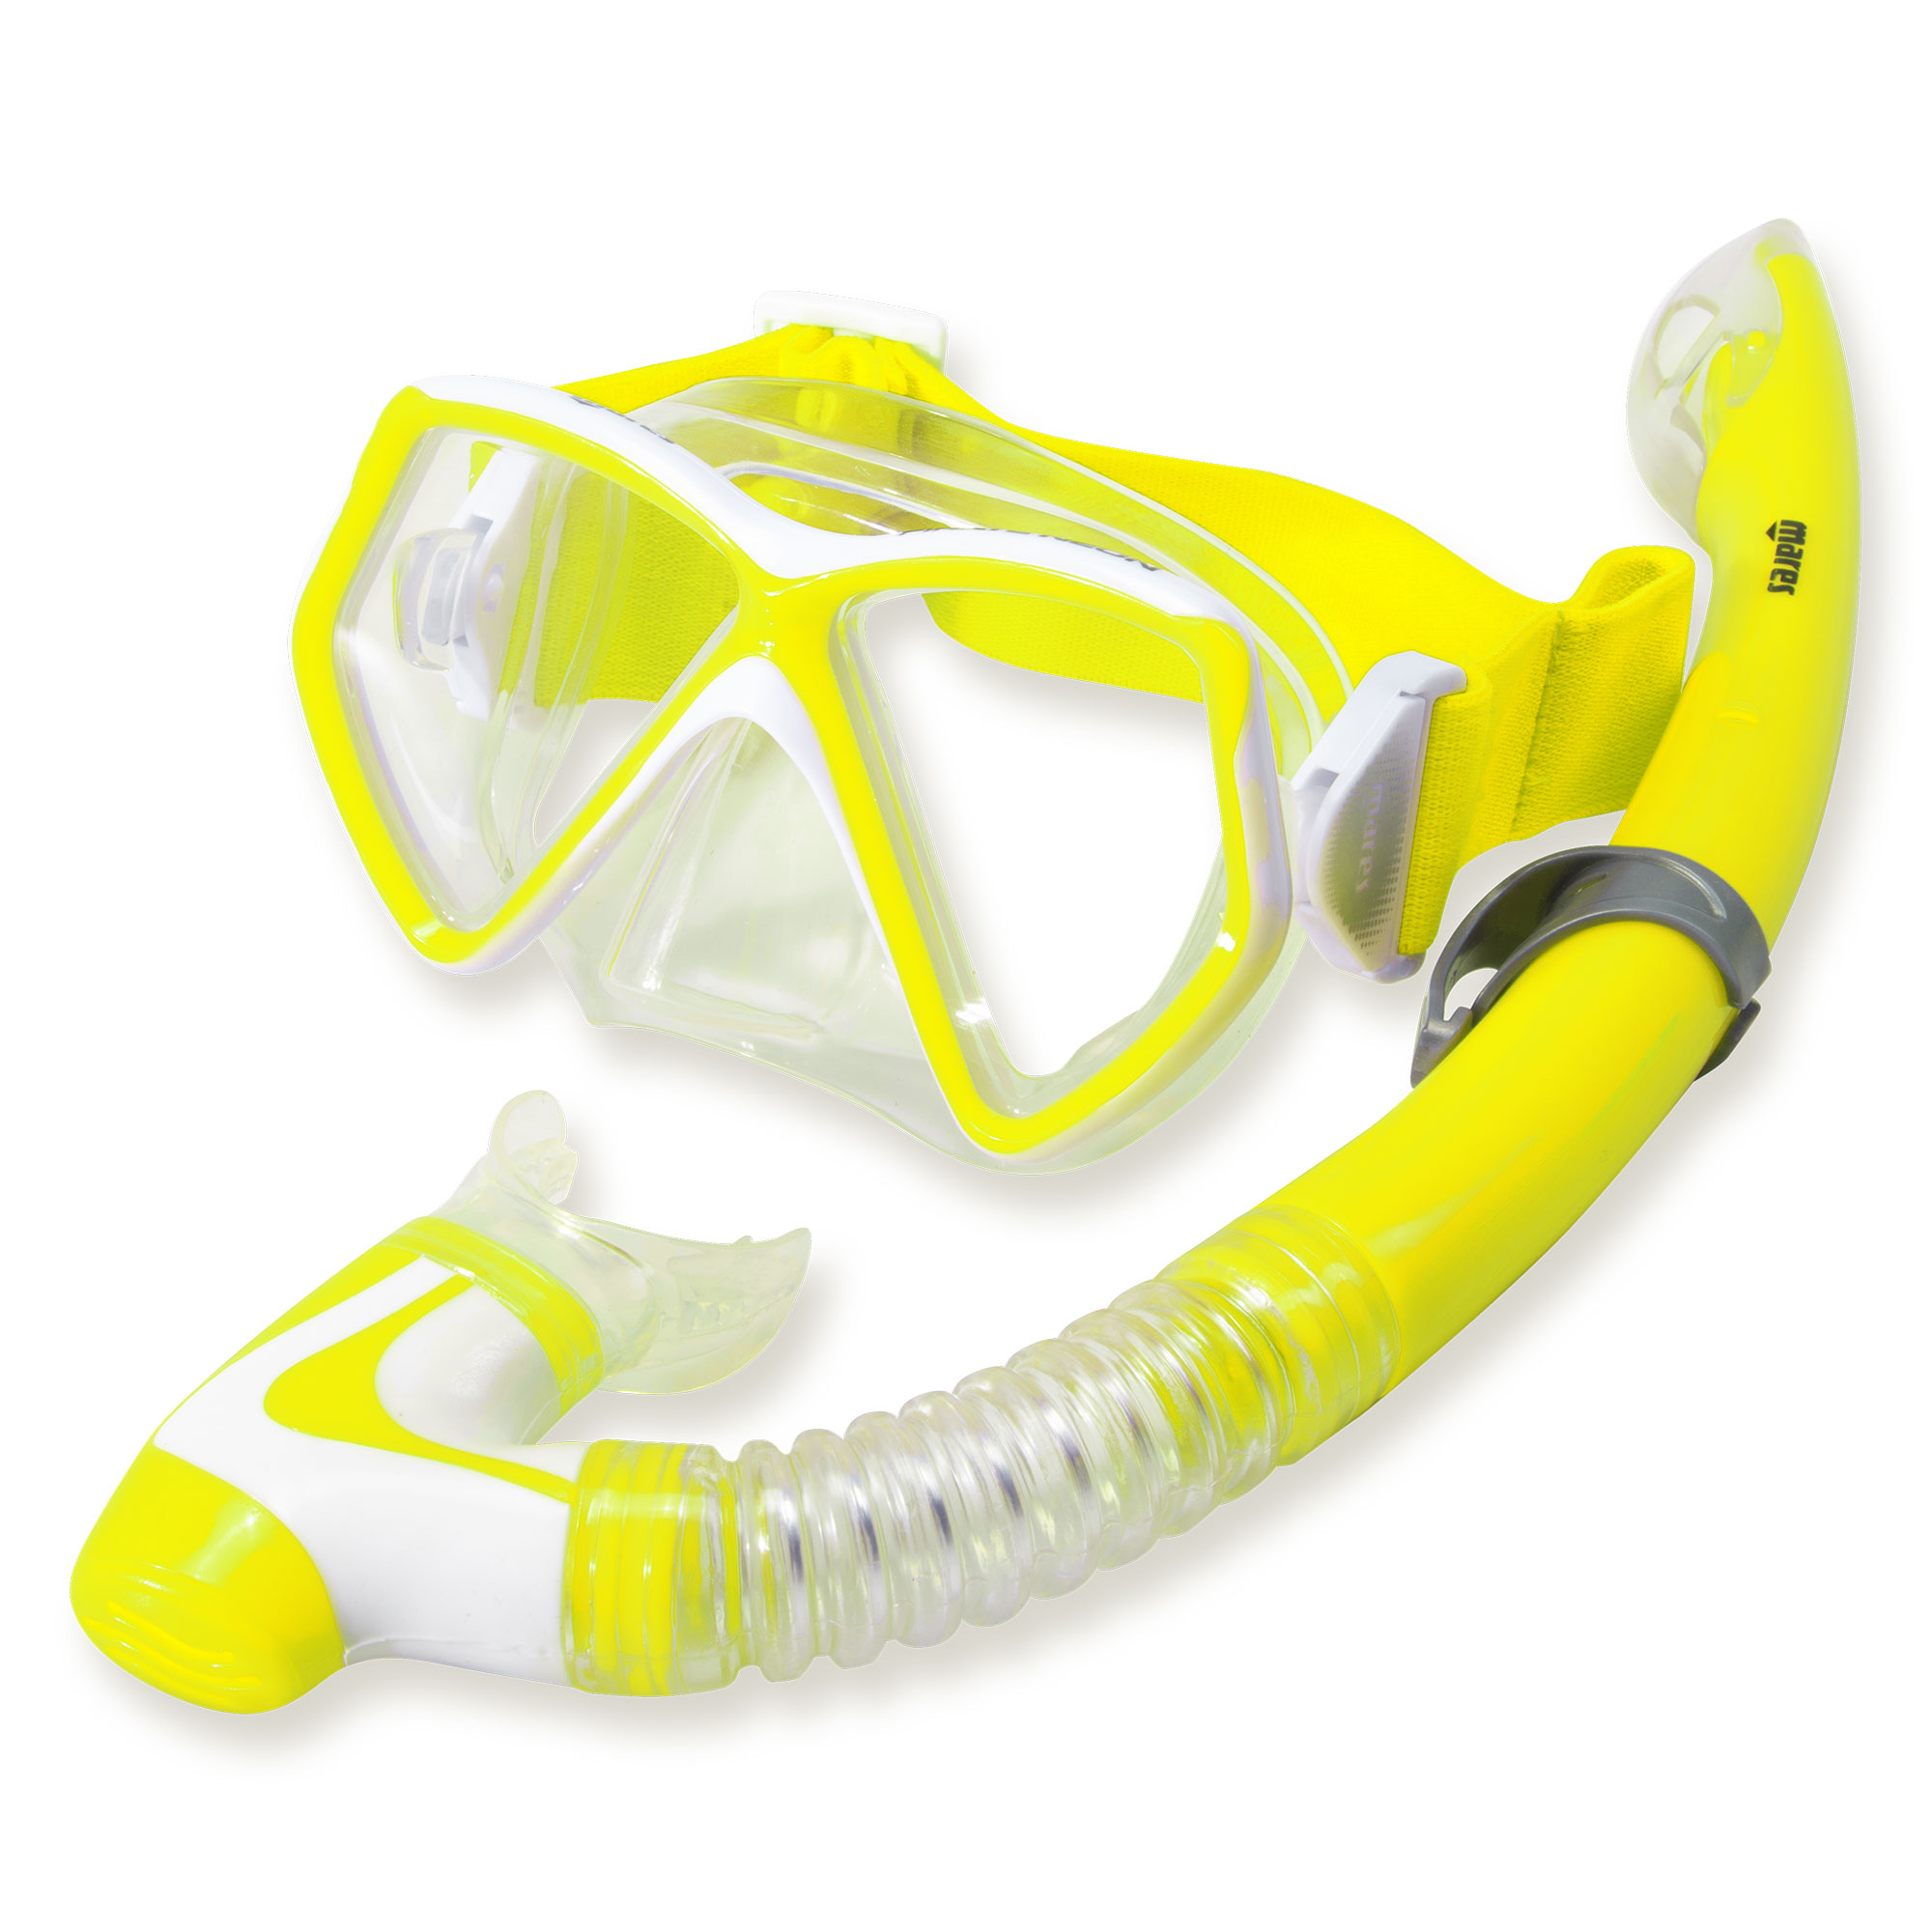 Bnineteenteam Schnorchel-Set für Kinder Schnorchel-Scuba-Brille und Silikonfinnen Gelb Schnorchel-Pakete für Kinder im Alter von 3-4 Jahren mit Maske 